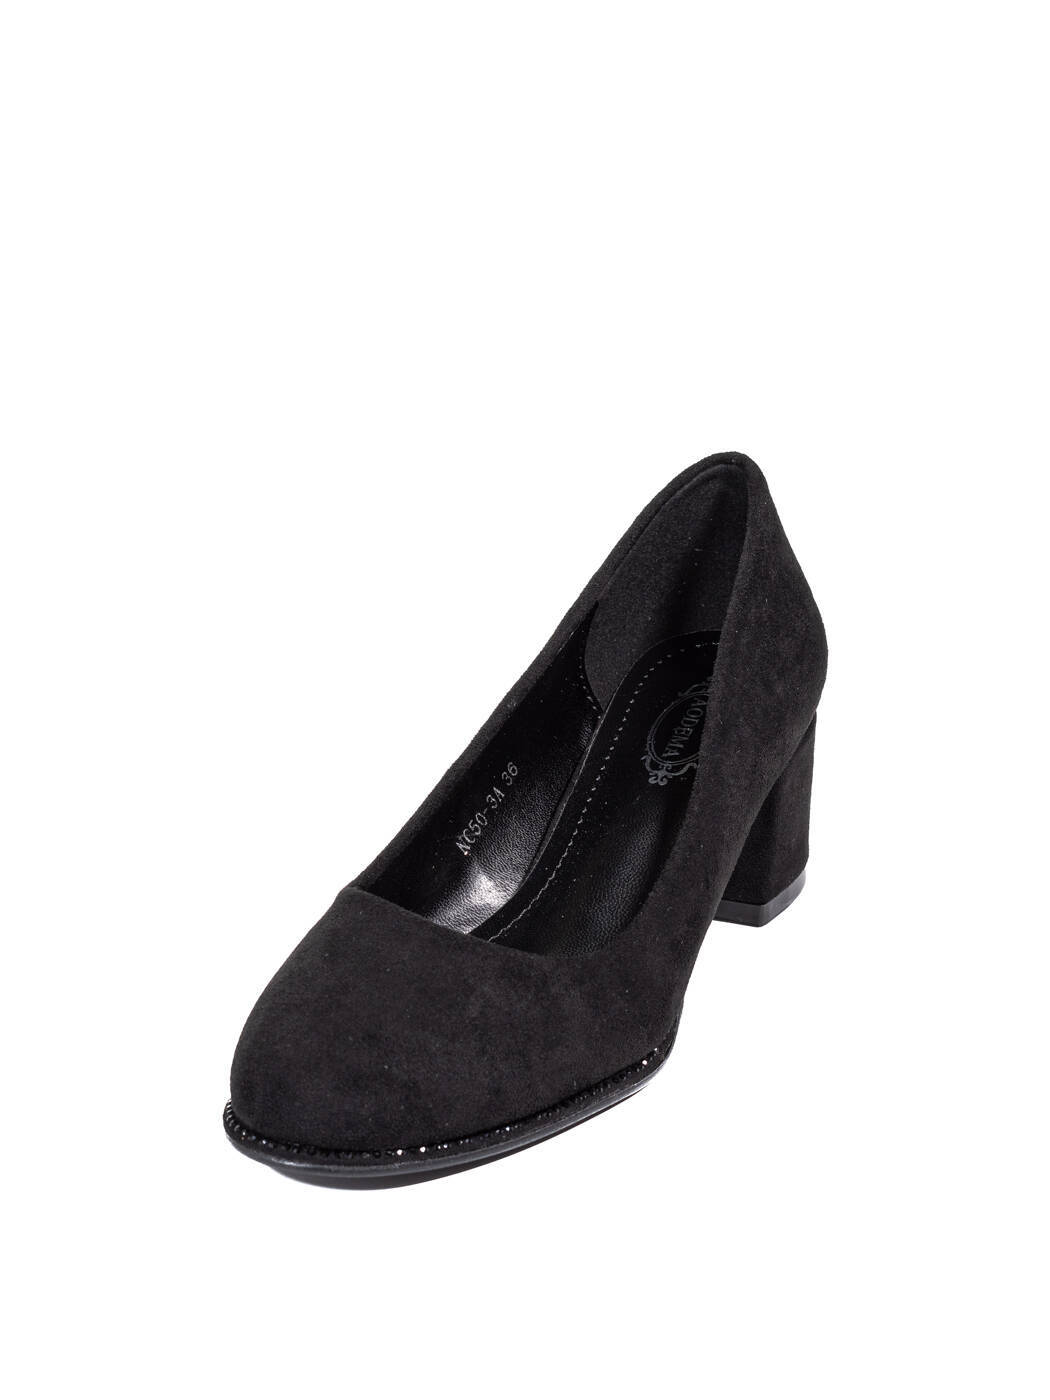 Туфли женские черные экозамша каблук устойчивый демисезон AM вид 2